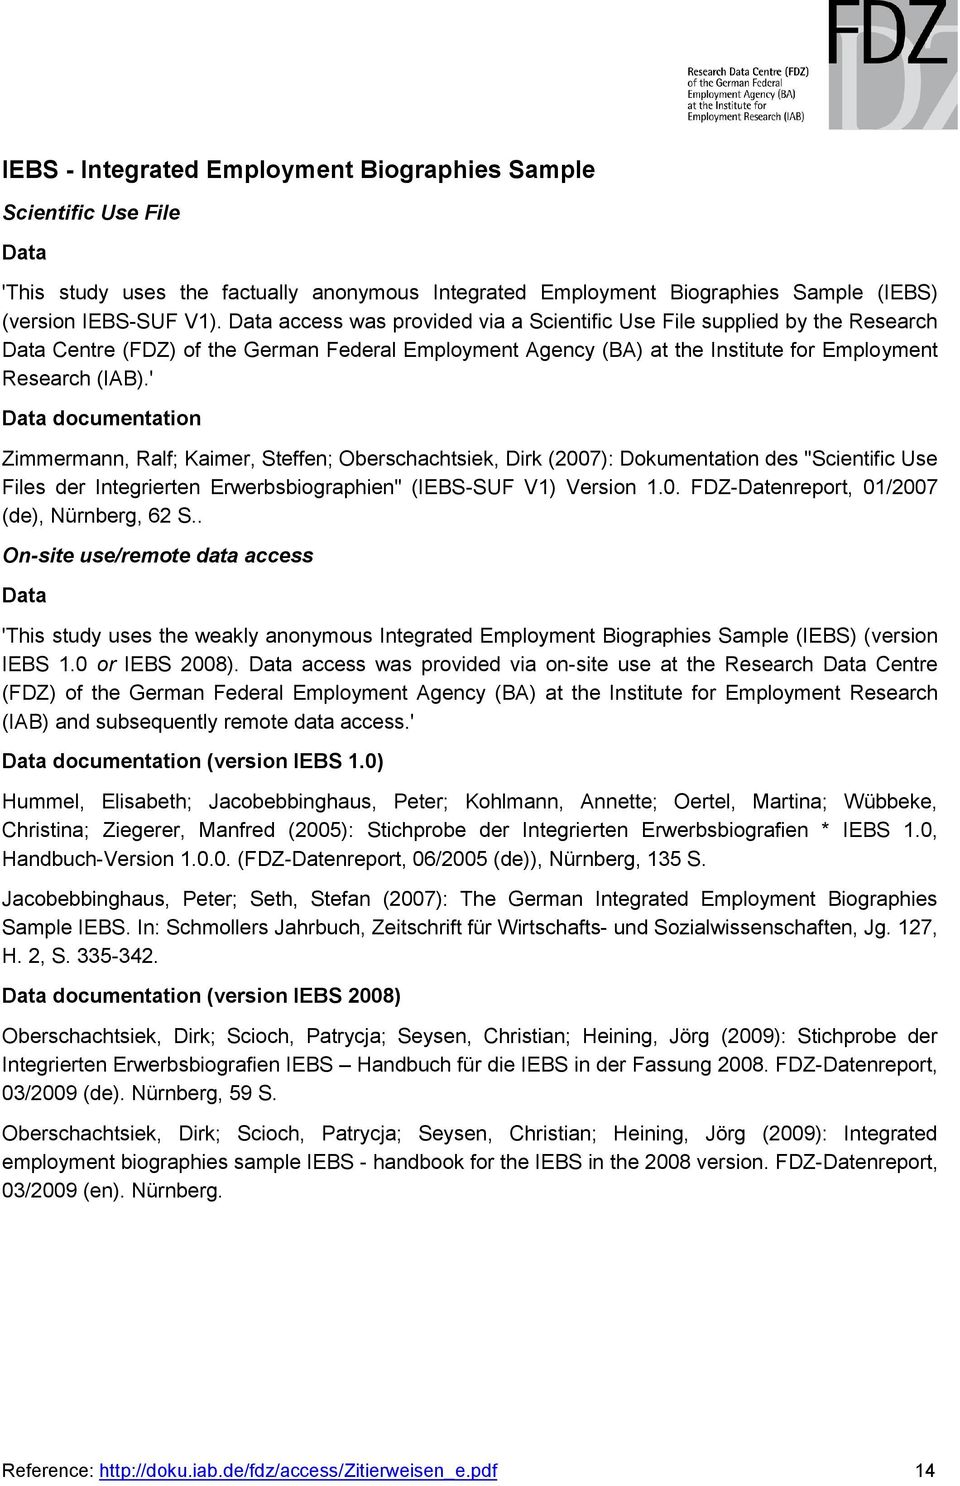 ' documentation Zimmermann, Ralf; Kaimer, Steffen; Oberschachtsiek, Dirk (2007): Dokumentation des "Scientific Use Files der Integrierten Erwerbsbiographien" (IEBS-SUF V1) Version 1.0. FDZ-Datenreport, 01/2007 (de), Nürnberg, 62 S.